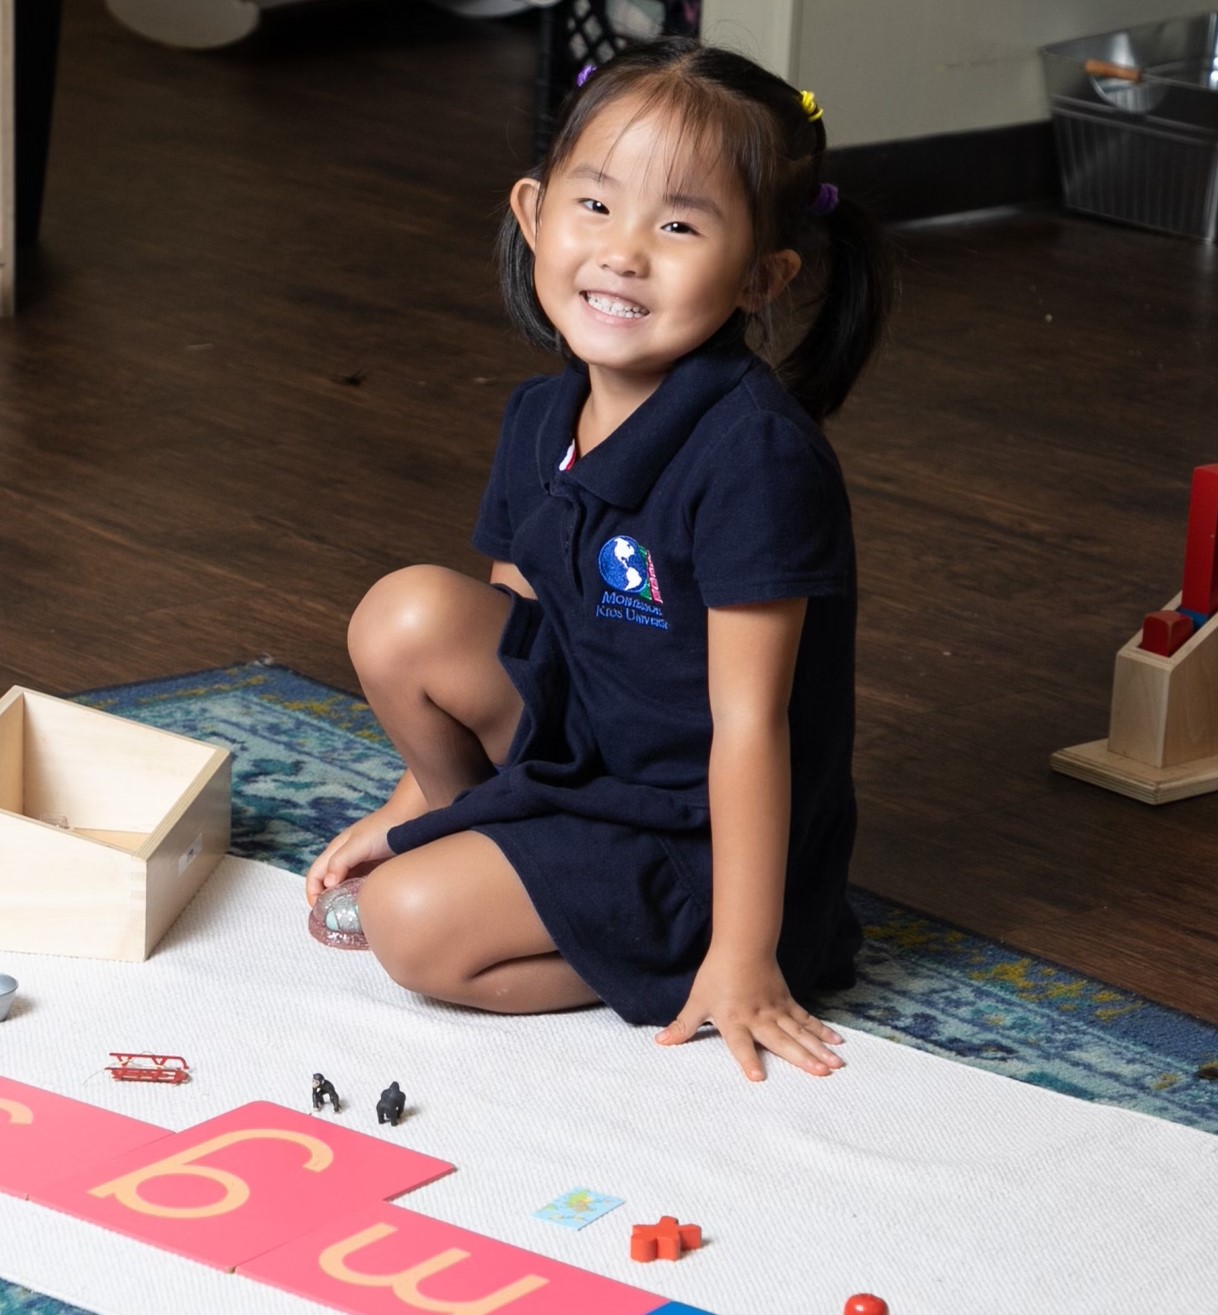 About Montessori Kids Universe Preschools & Daycare